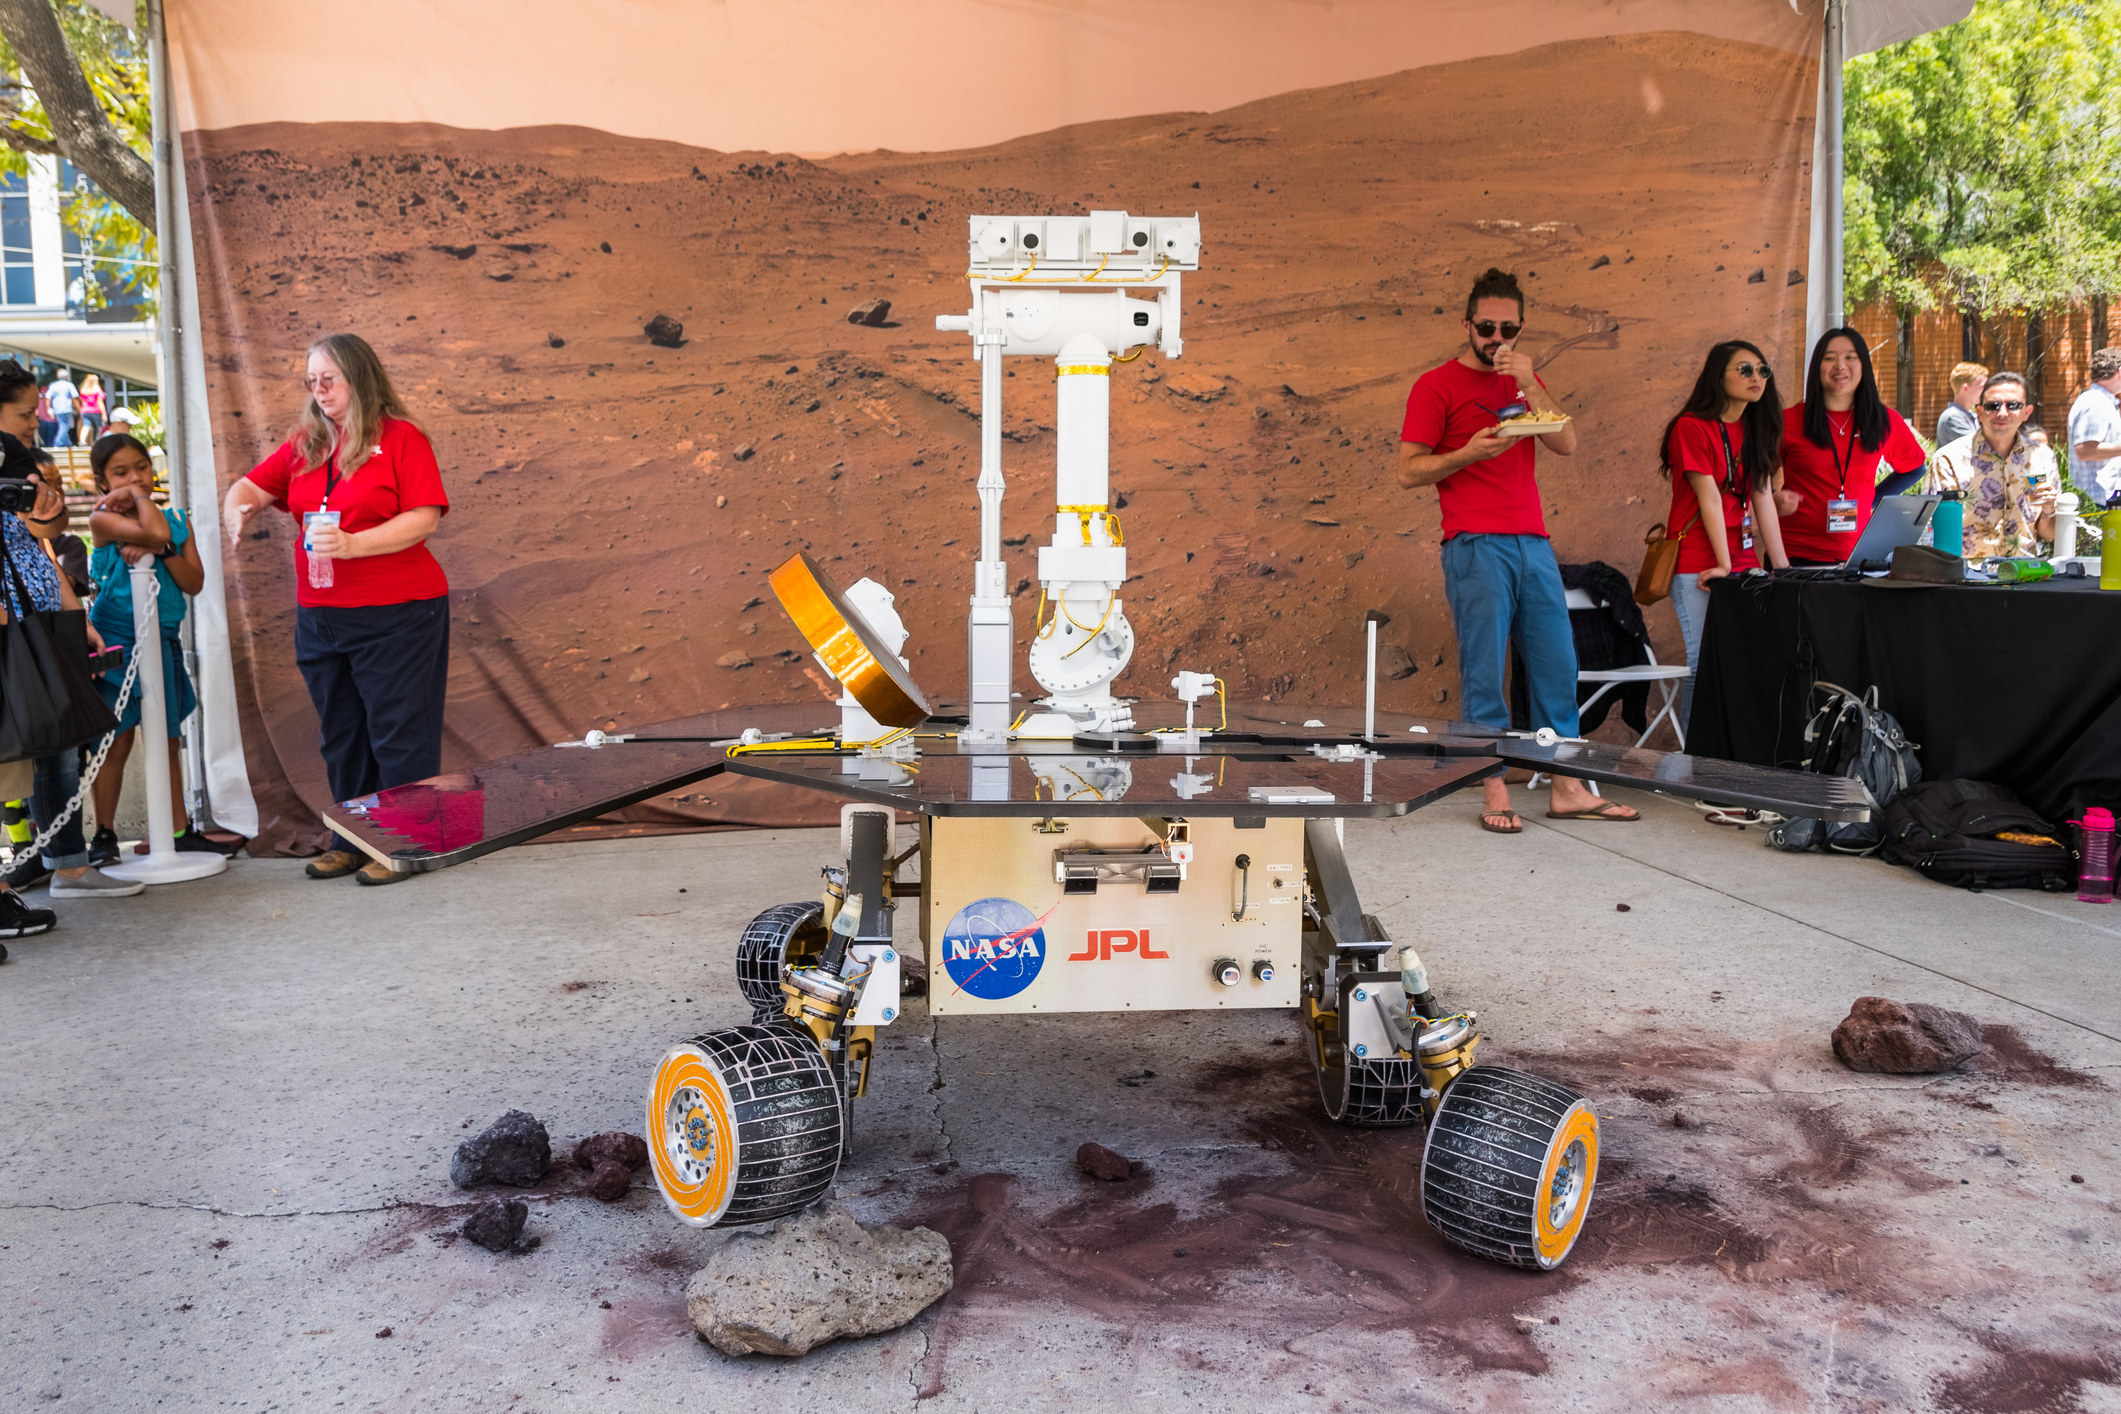 A Nassa JPL rover